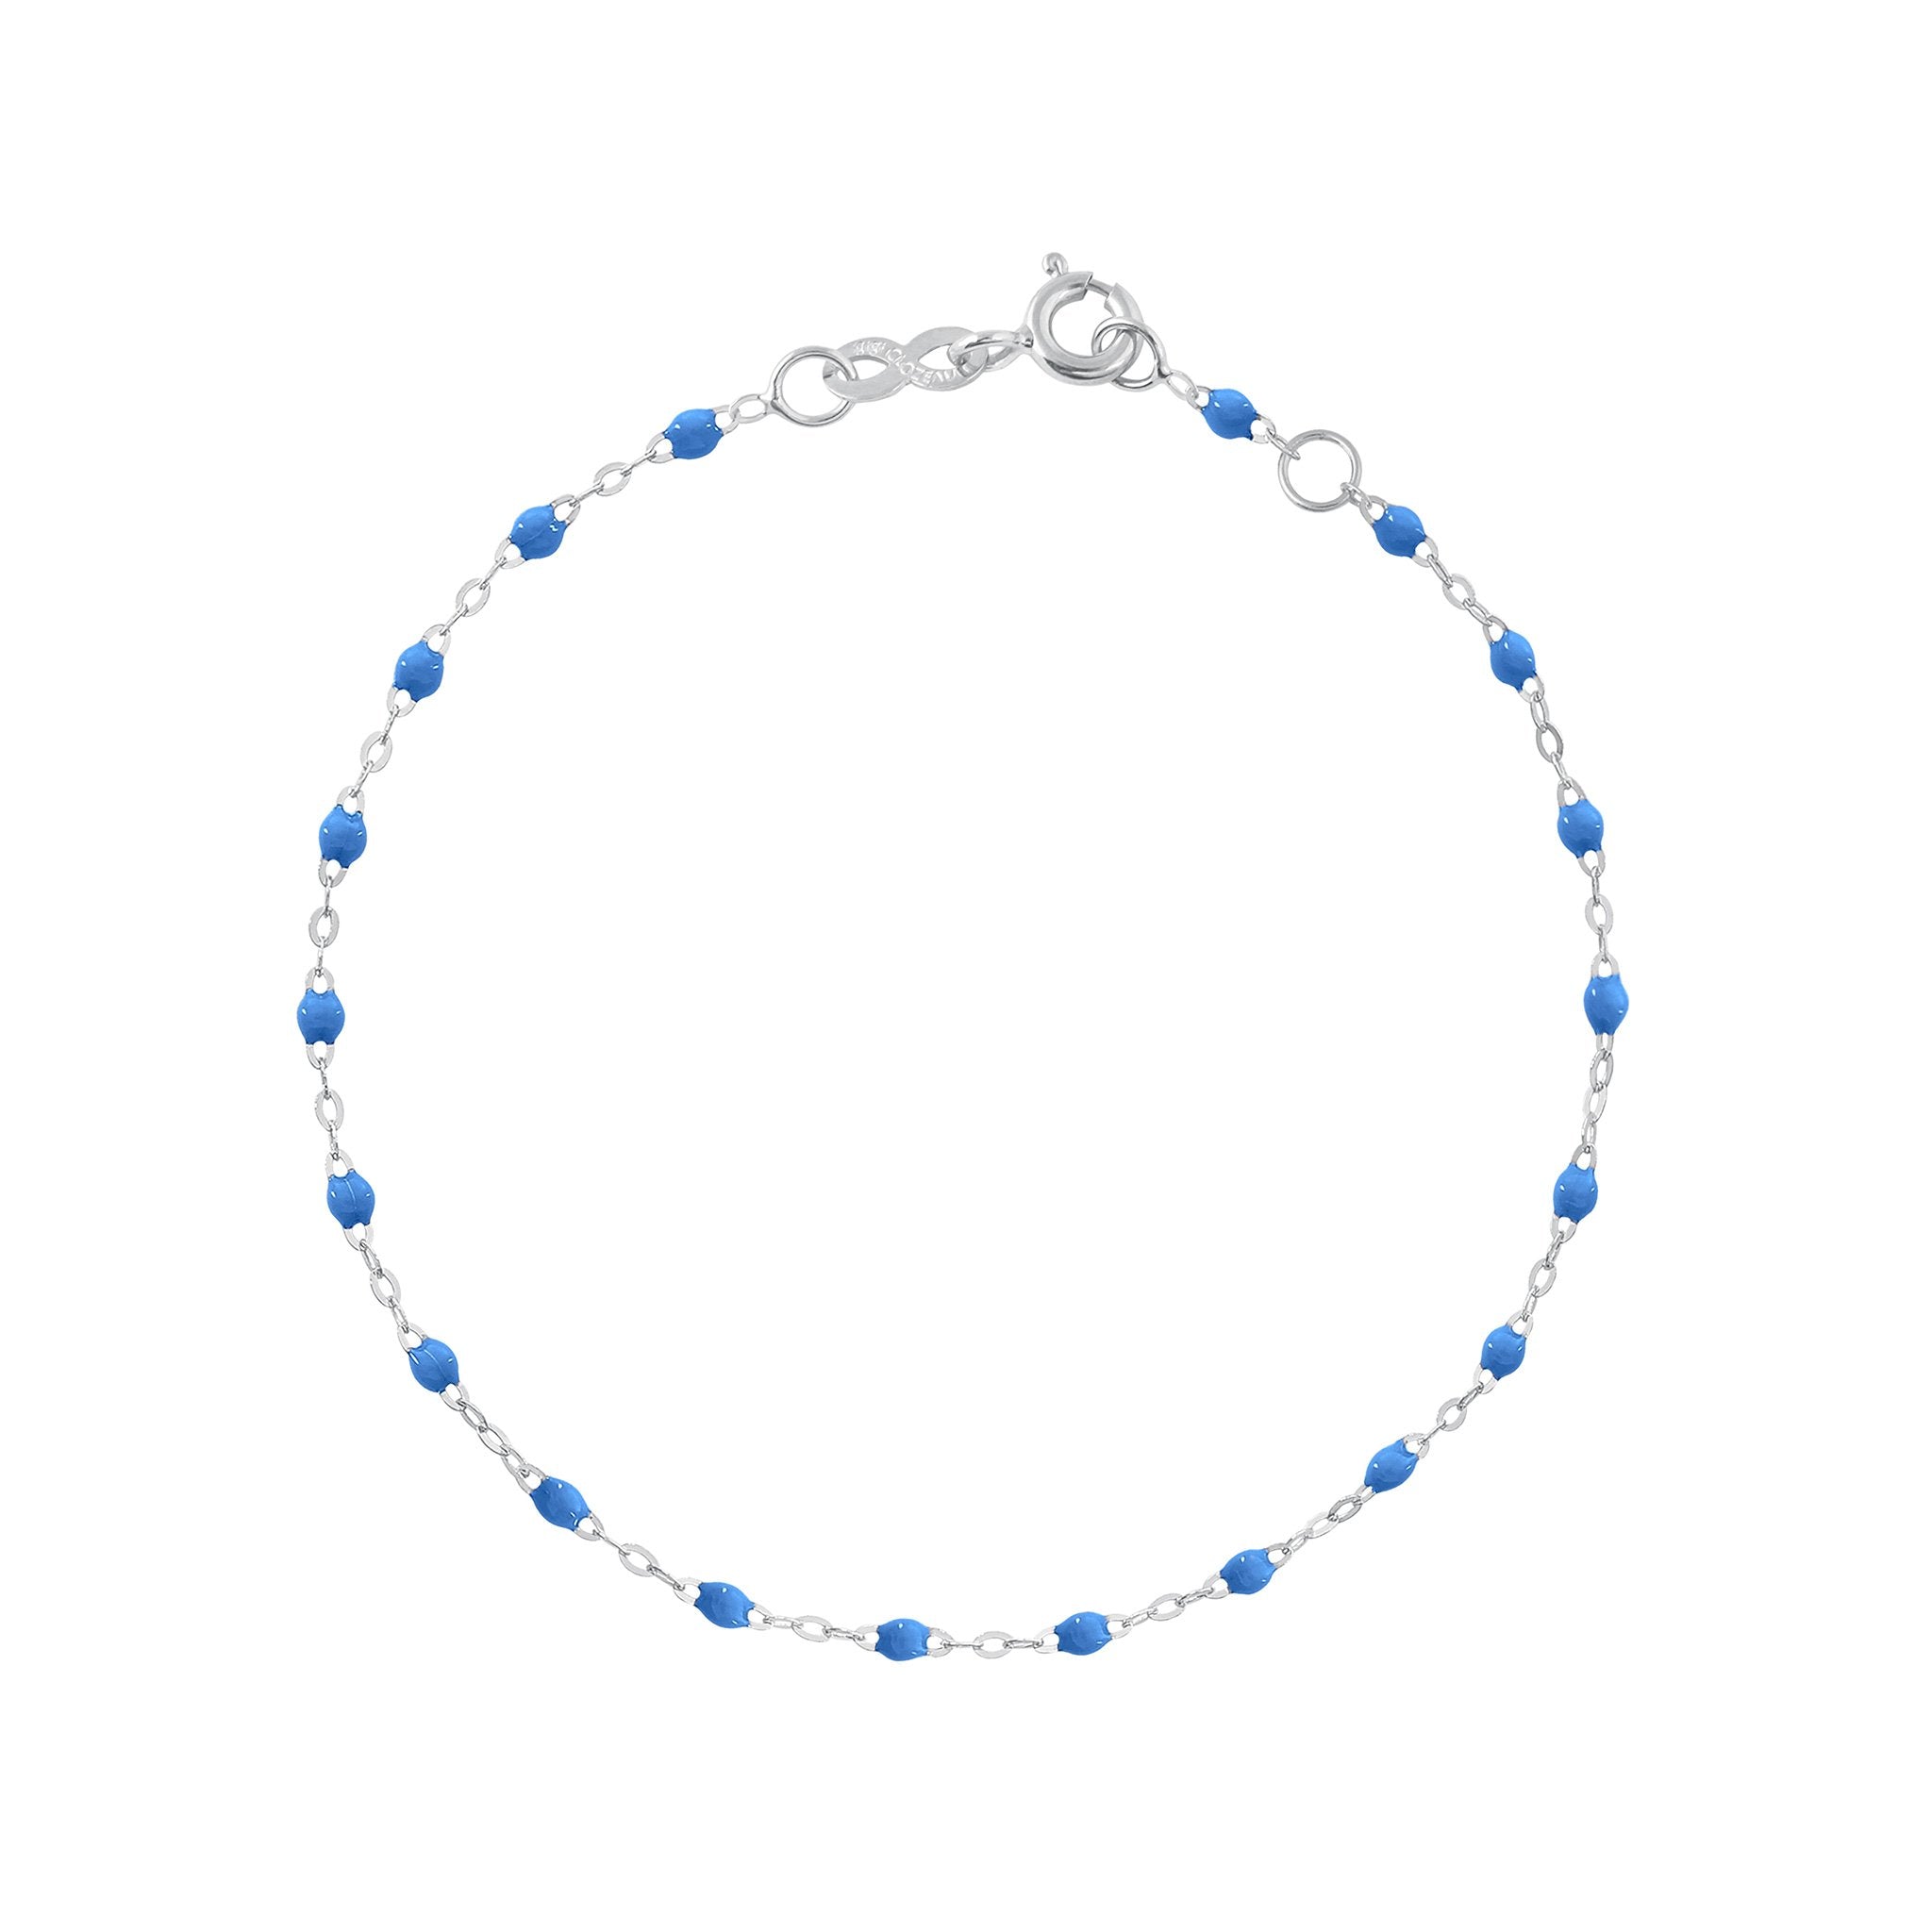 Bracelet bleu fluo Classique Gigi, or blanc, 15 cm classique gigi Référence :  b3gi001g0415xx -1